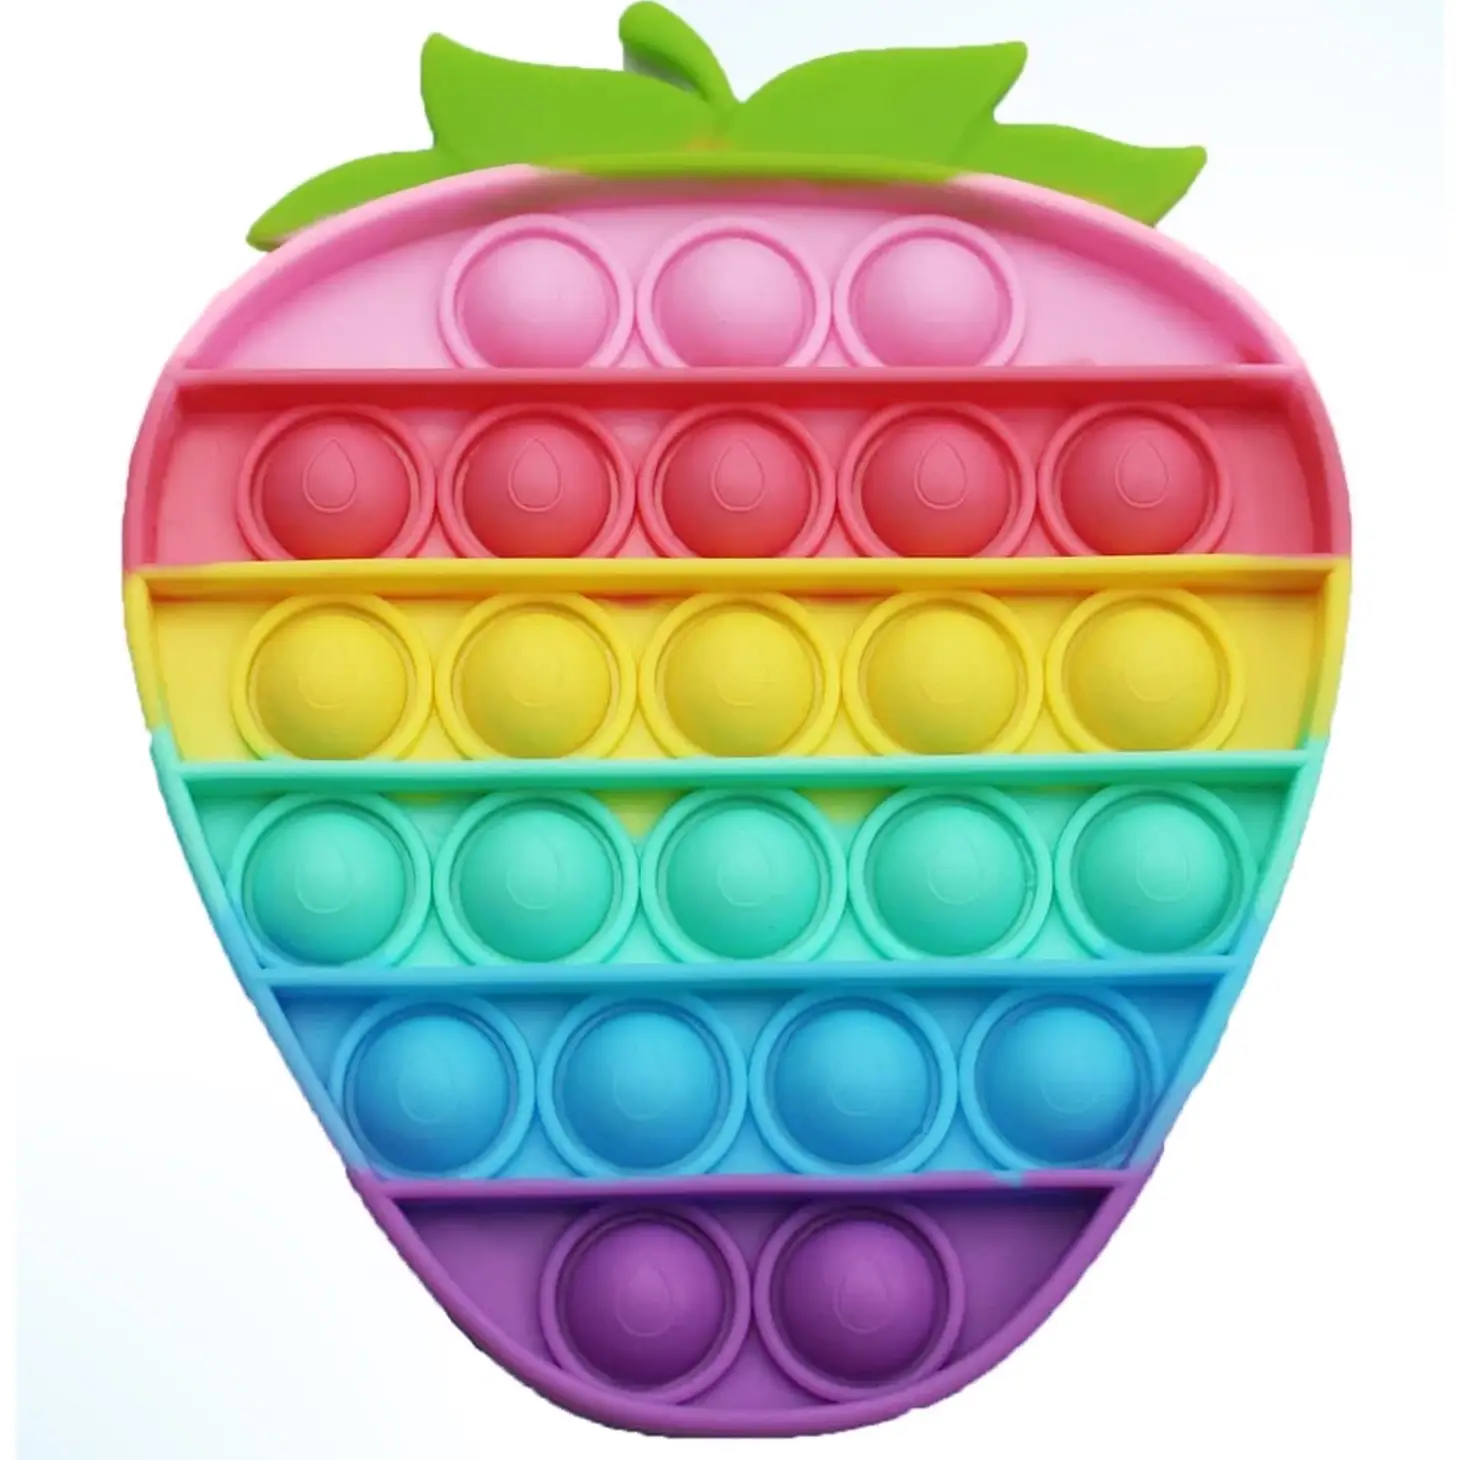 Rainbow Strawberry Pop-It Toy